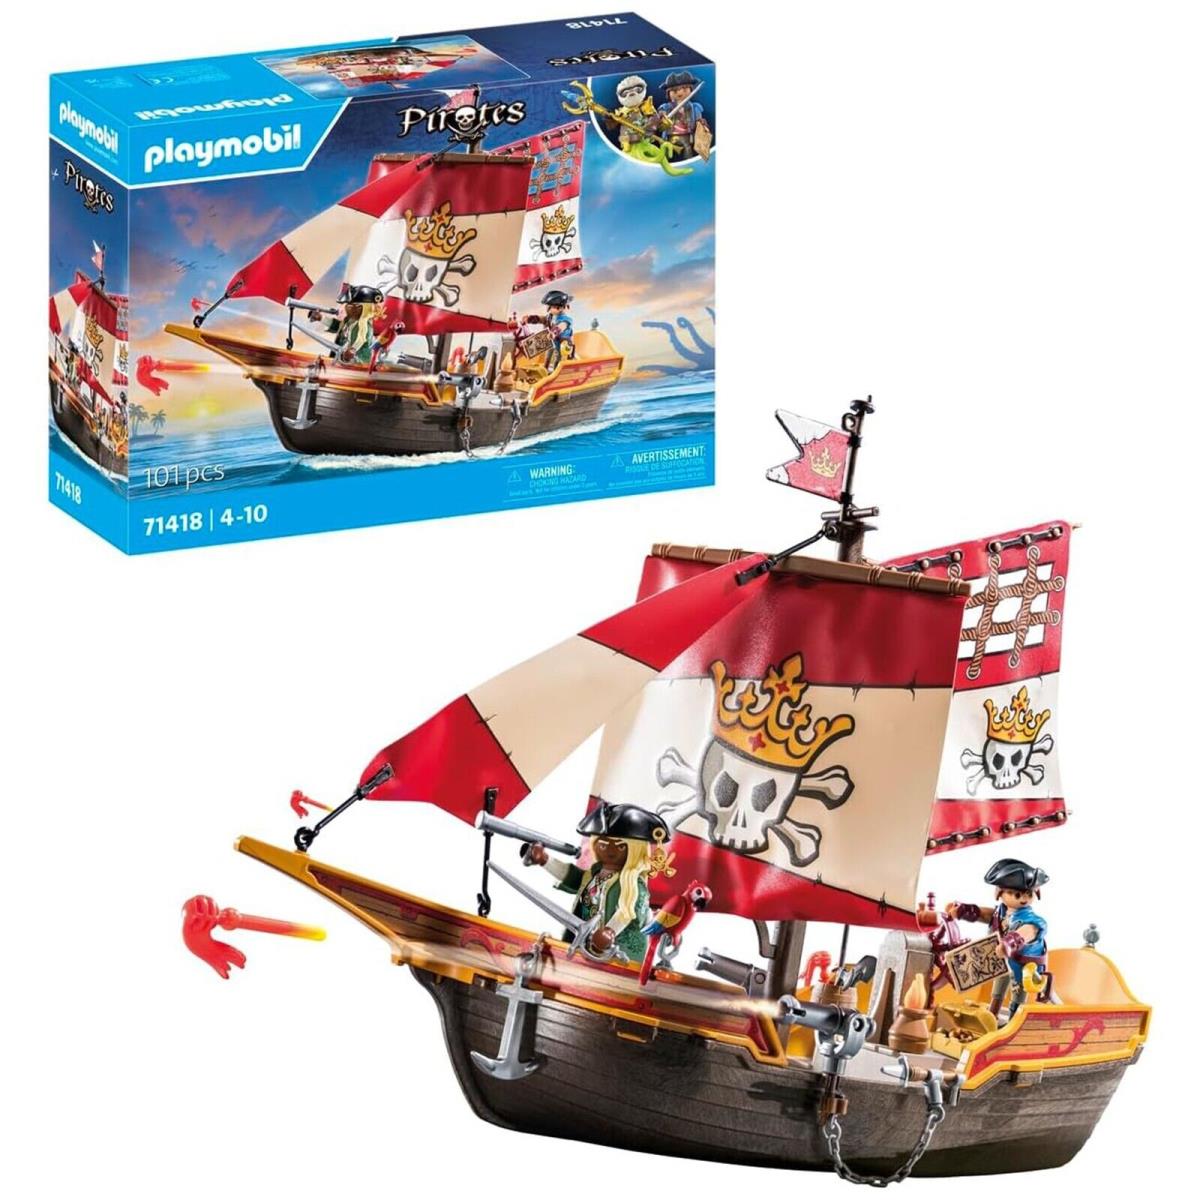 Playmobil Pirates Pirate Ship Building Set 71418